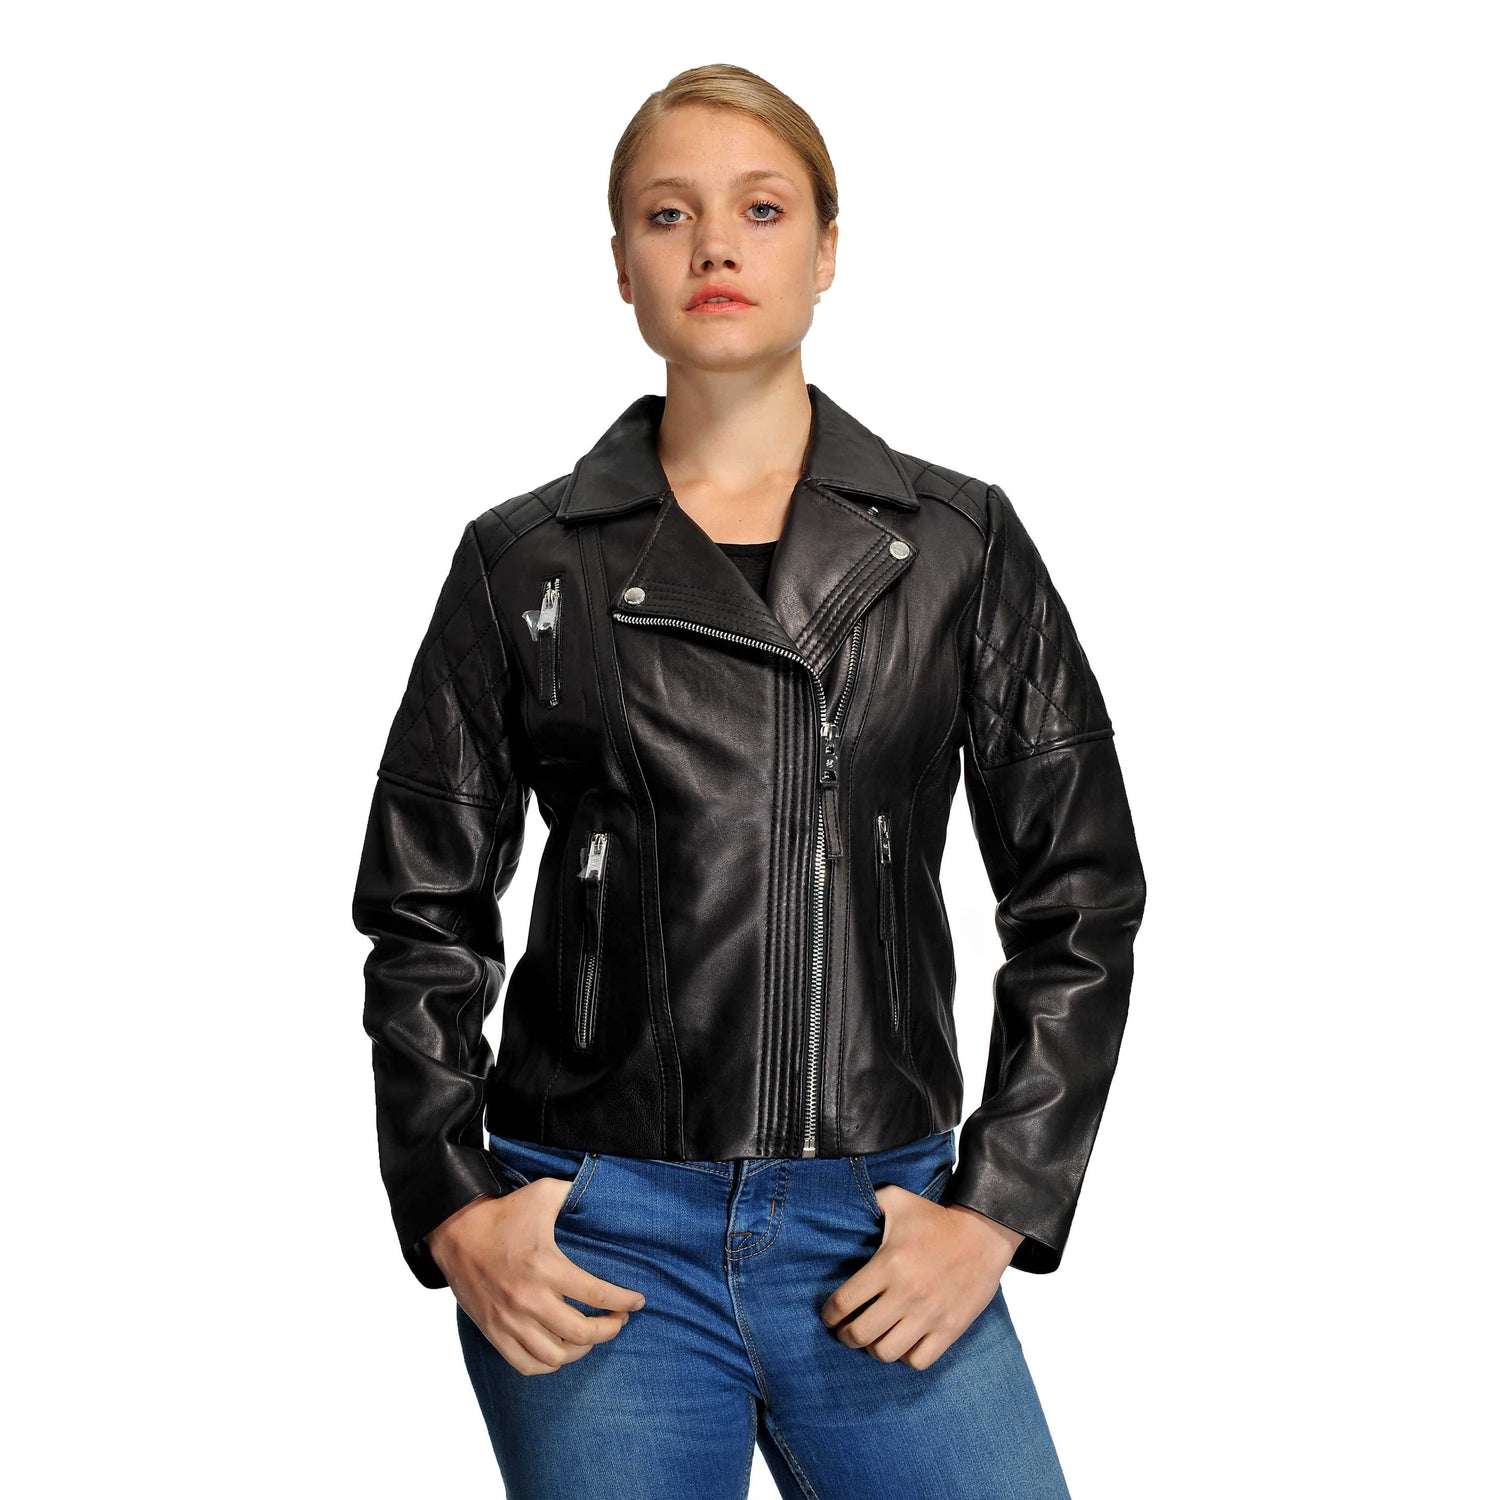 Michael Kors Women's Leather Jacket – Zooloo Leather